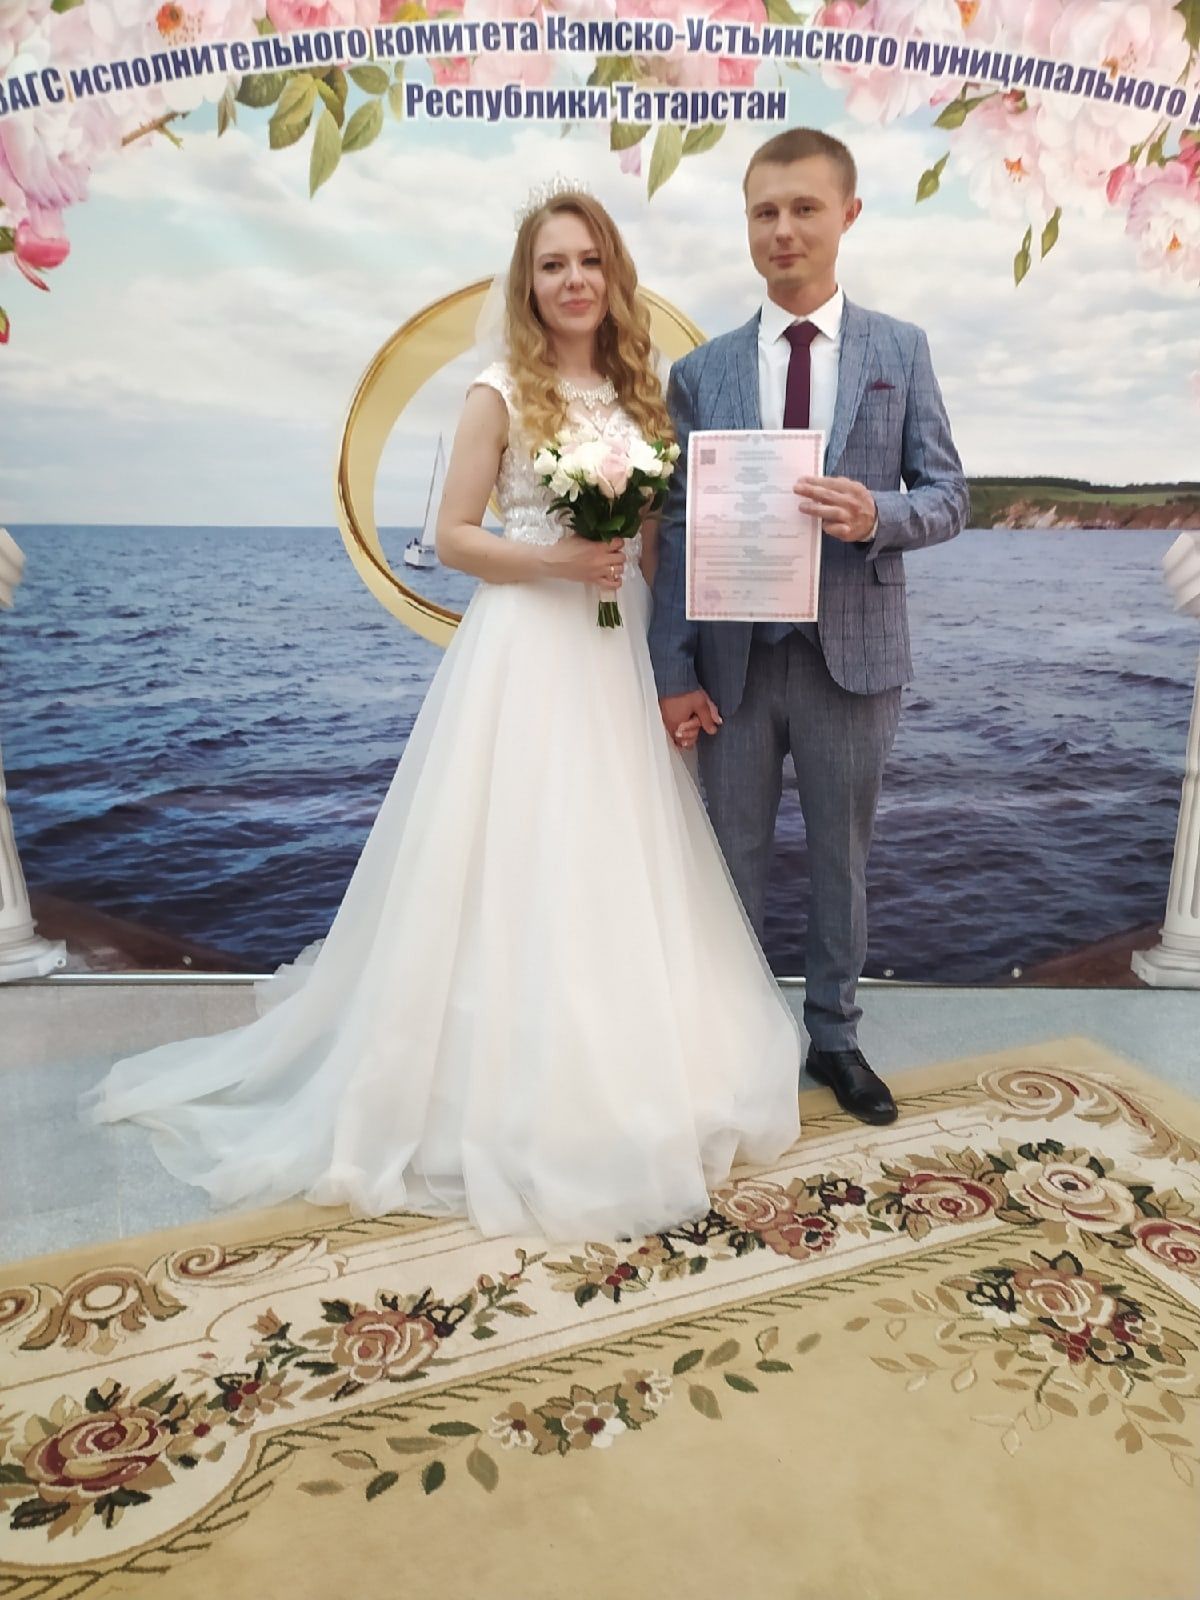 Стала известна статистика браков и разводов за 2022 год в Камском Устье